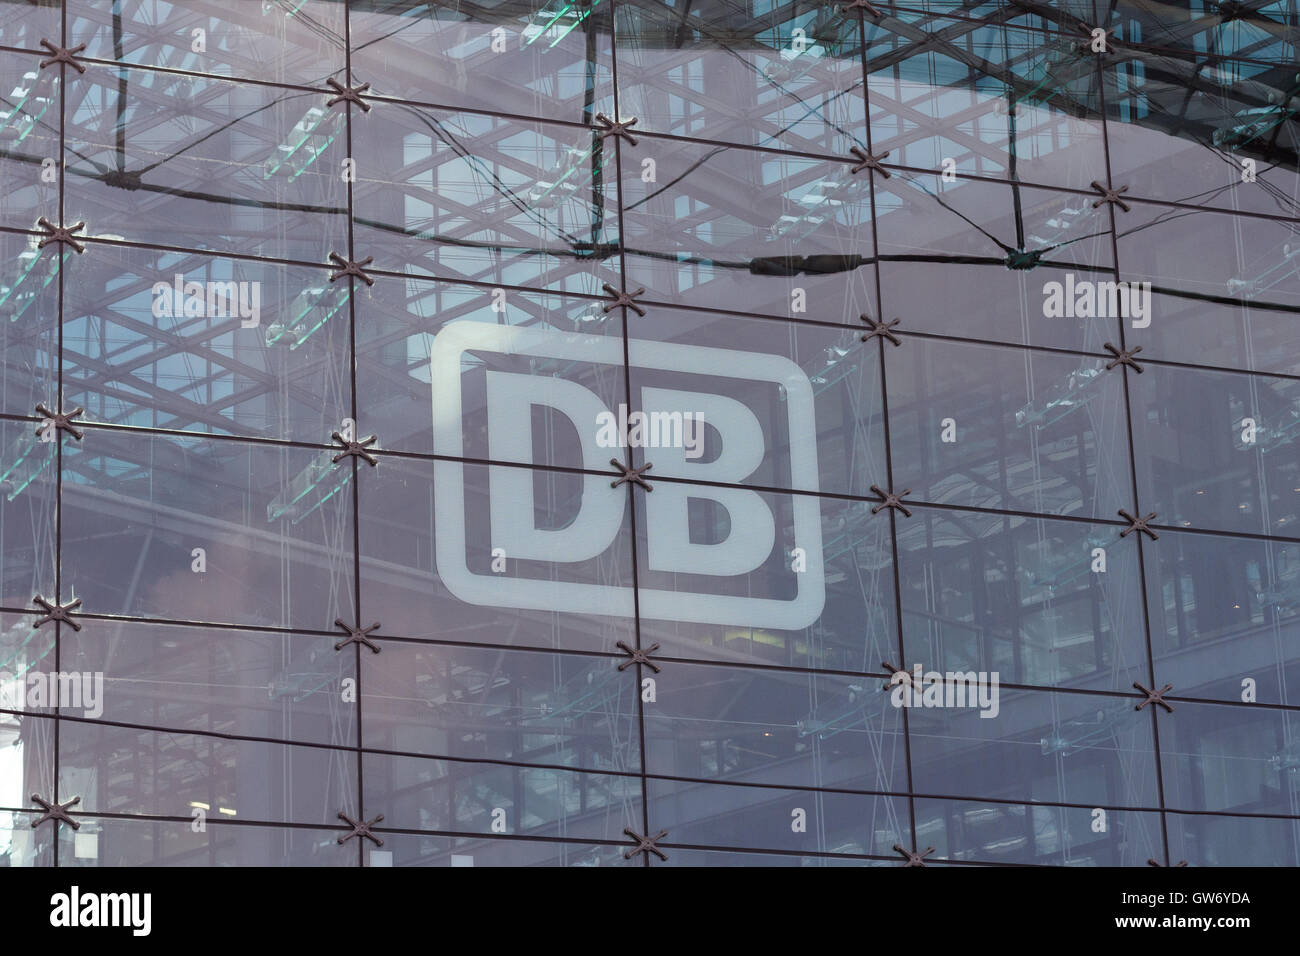 Logotipo ferroviaria alemana 'DB' (Deutsche Bahn) sobre la fachada de vidrio de la estación de tren principal de Berlín (Berlin Hauptbahnhof) Foto de stock